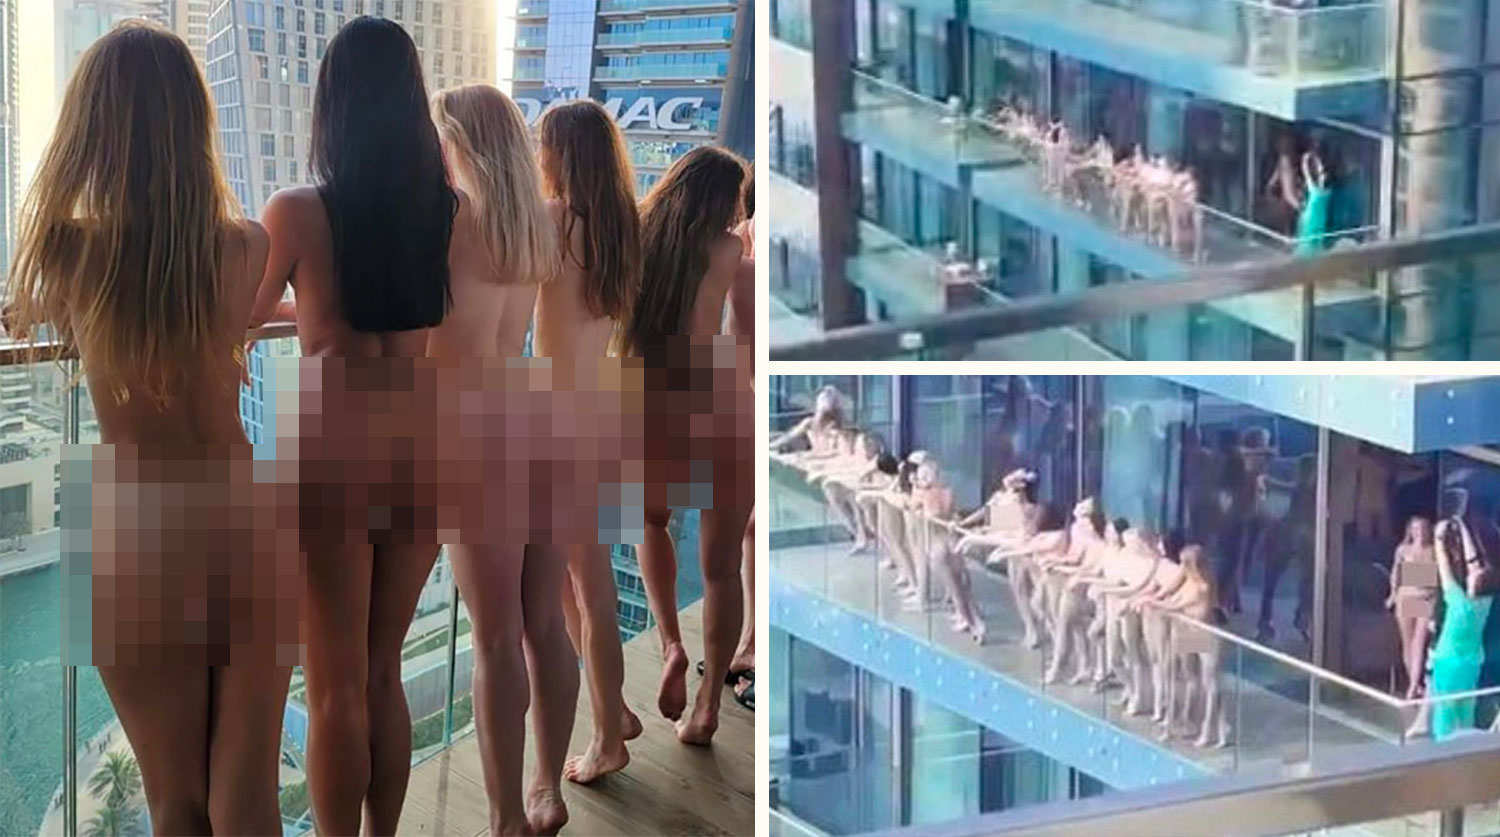 Задержанный за фото голых девушек на балконе рассказал, как провел 19 дней  в дубайской тюрьме - Газета.Ru | Новости